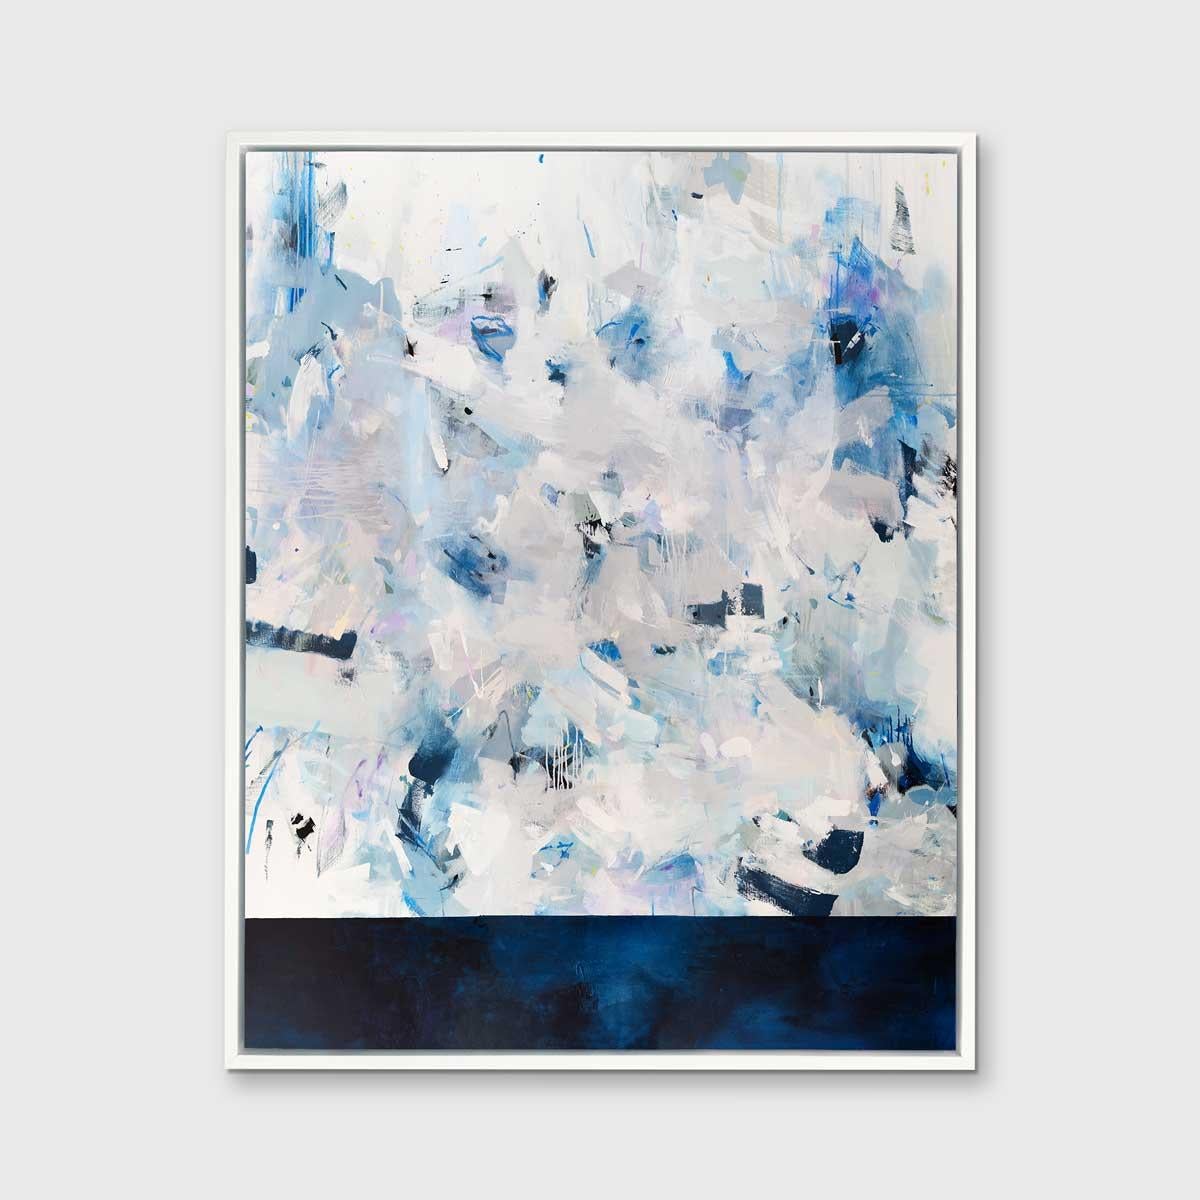 Dieser abstrakte Giclée-Druck in limitierter Auflage von Kelly Rossetti ist in einer kühlen Blau- und Weißpalette gehalten. Der untere Teil der Komposition ist in einem tiefen Mitternachtsblau gehalten, das durch die ausdrucksstarken Pinselstriche